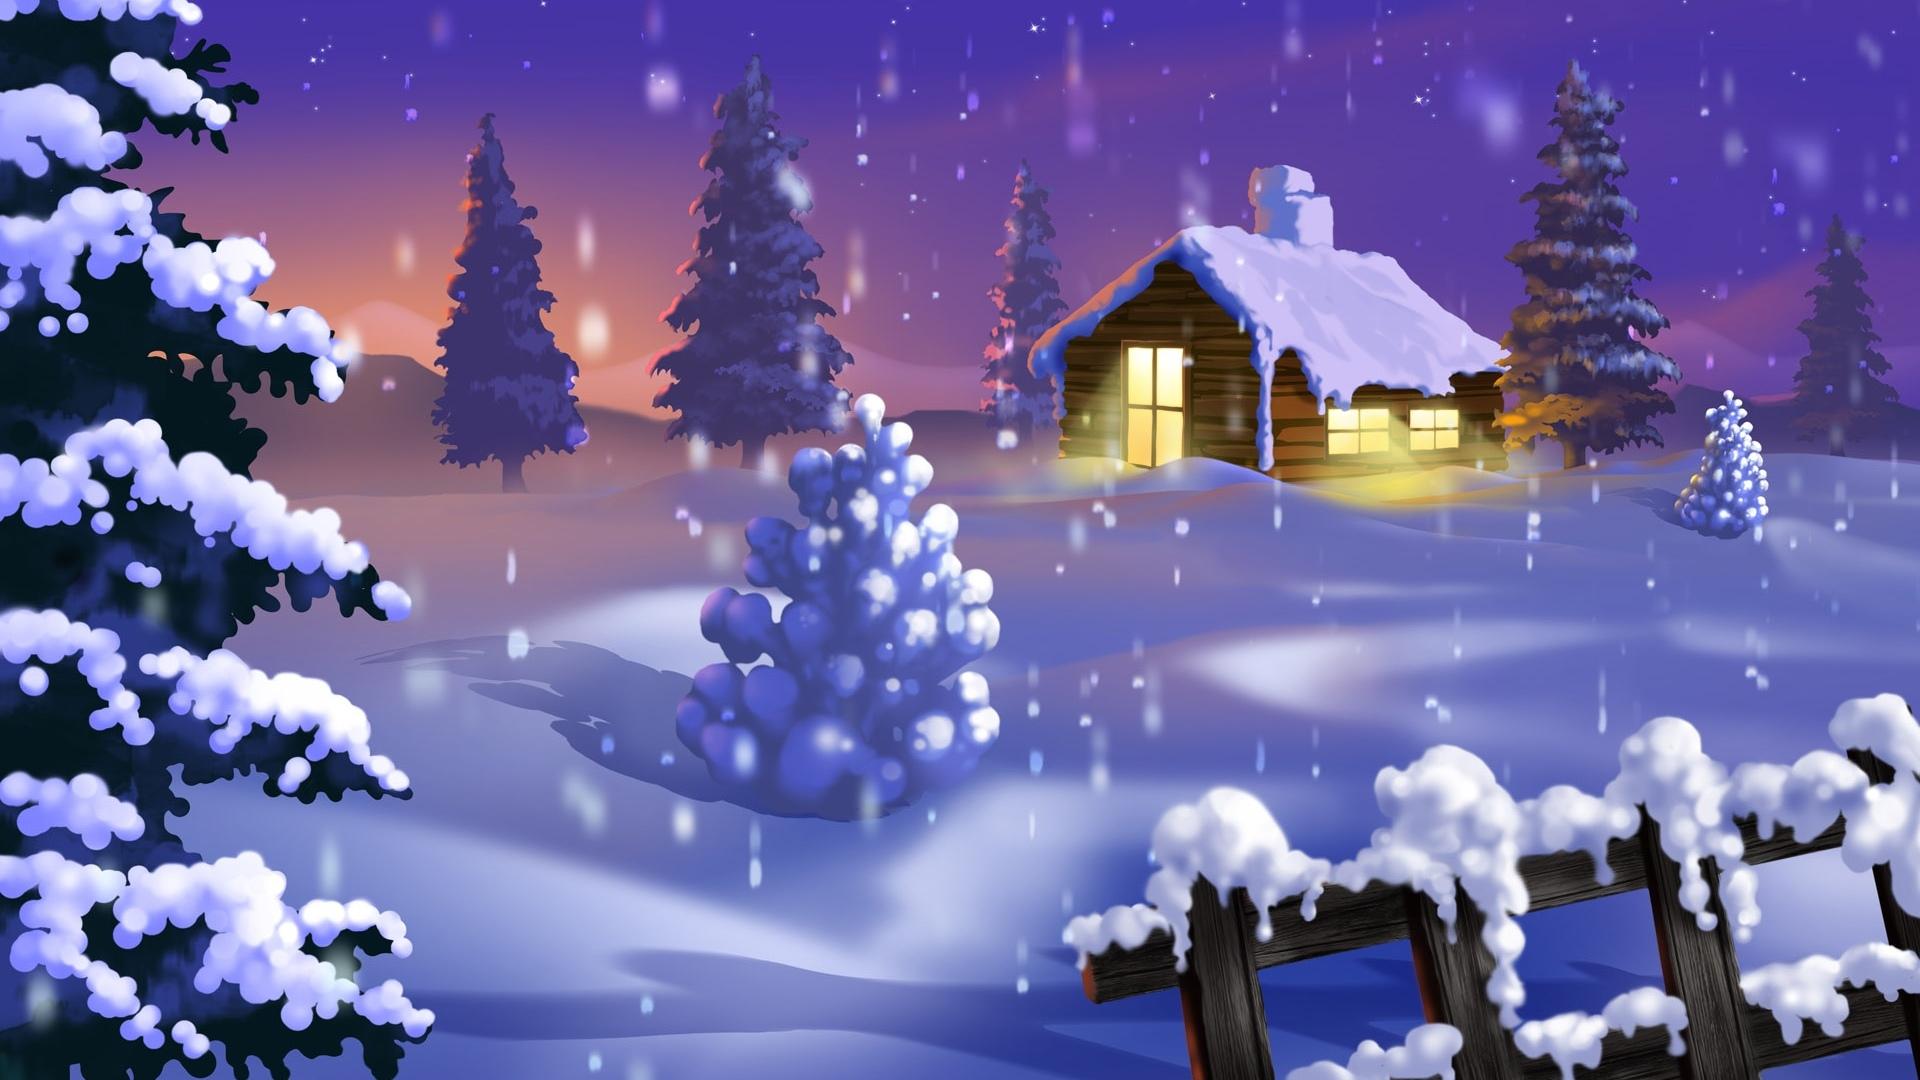 Hd Christmas Wallpaper 1080p HD Christmas Wallpaper 1080p. Full Desktop Background